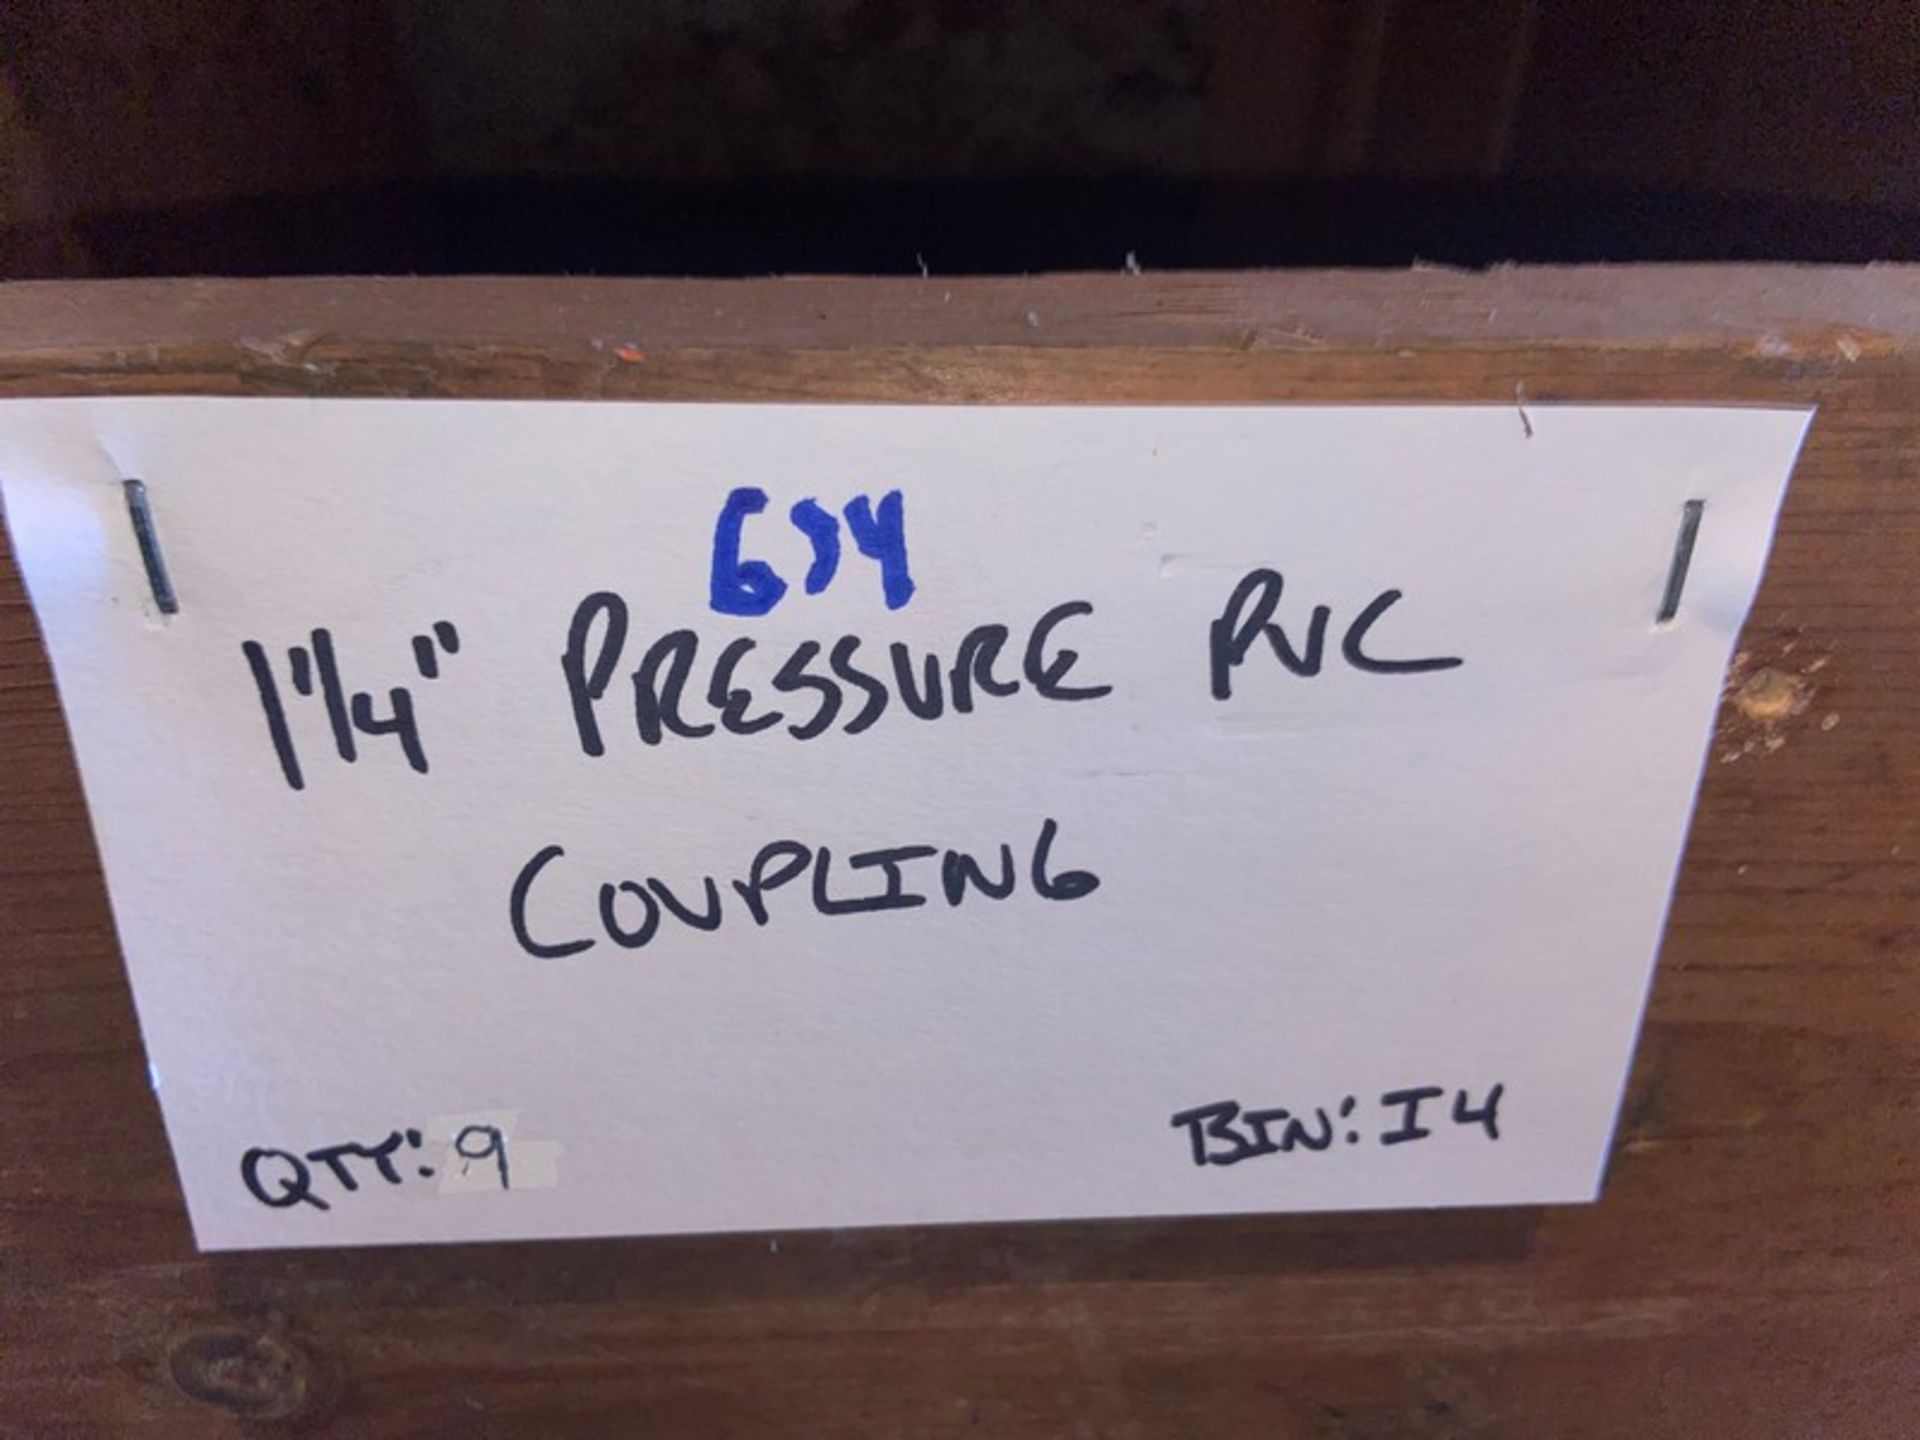 (9) 1 1/4” Pressure PVC COUPLING (Bin:I4); (2) 1 1/4” Pressure PVC Ball valve (Bin:I4)(LOCATED IN - Image 3 of 5